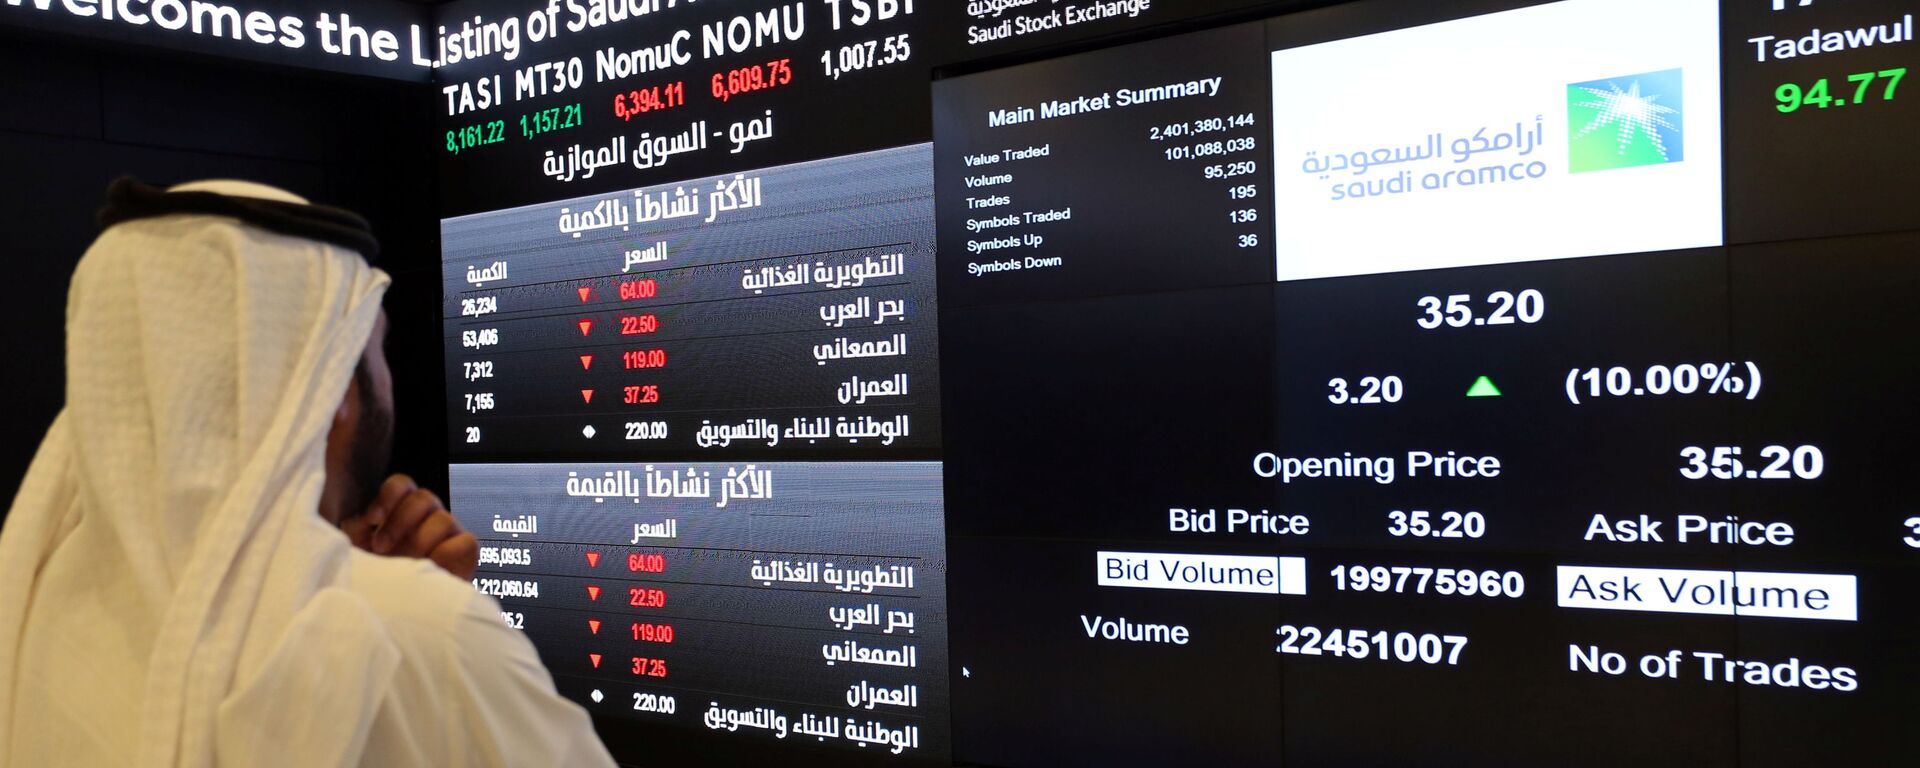 شاشة تعرض معلومات الأسهم في السوق المالية السعودية (تداول)، في الرياض، السعودية 11 ديسمبر 2019 - سبوتنيك عربي, 1920, 08.06.2021